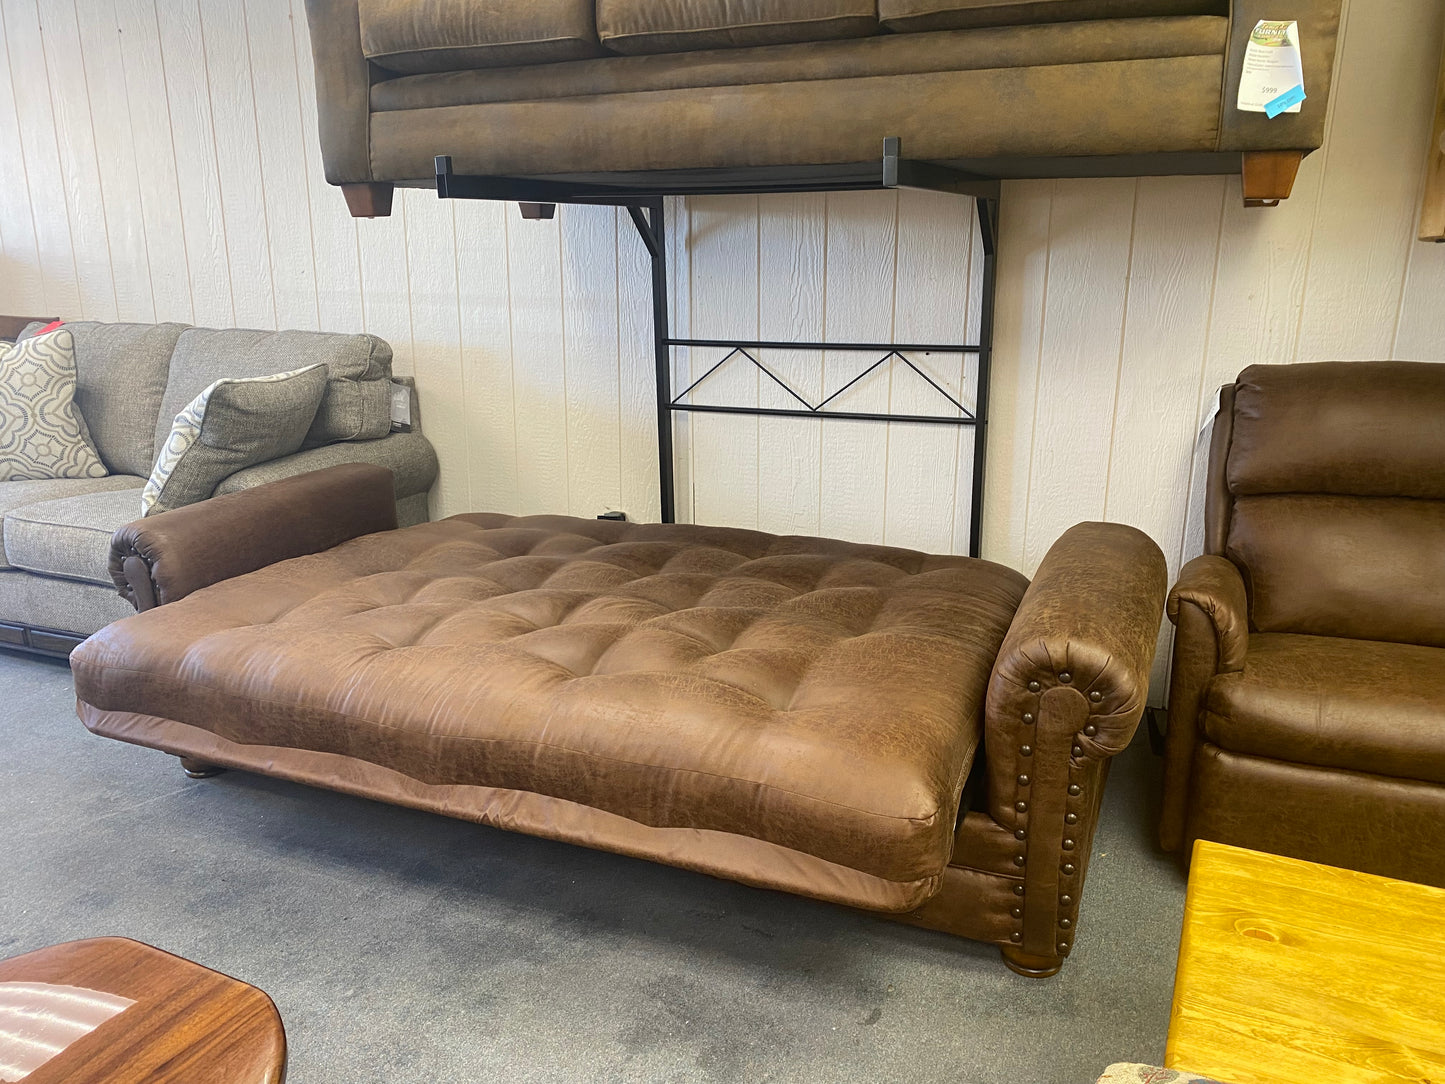 EZ Lounger Sofa (full size futon style bed)